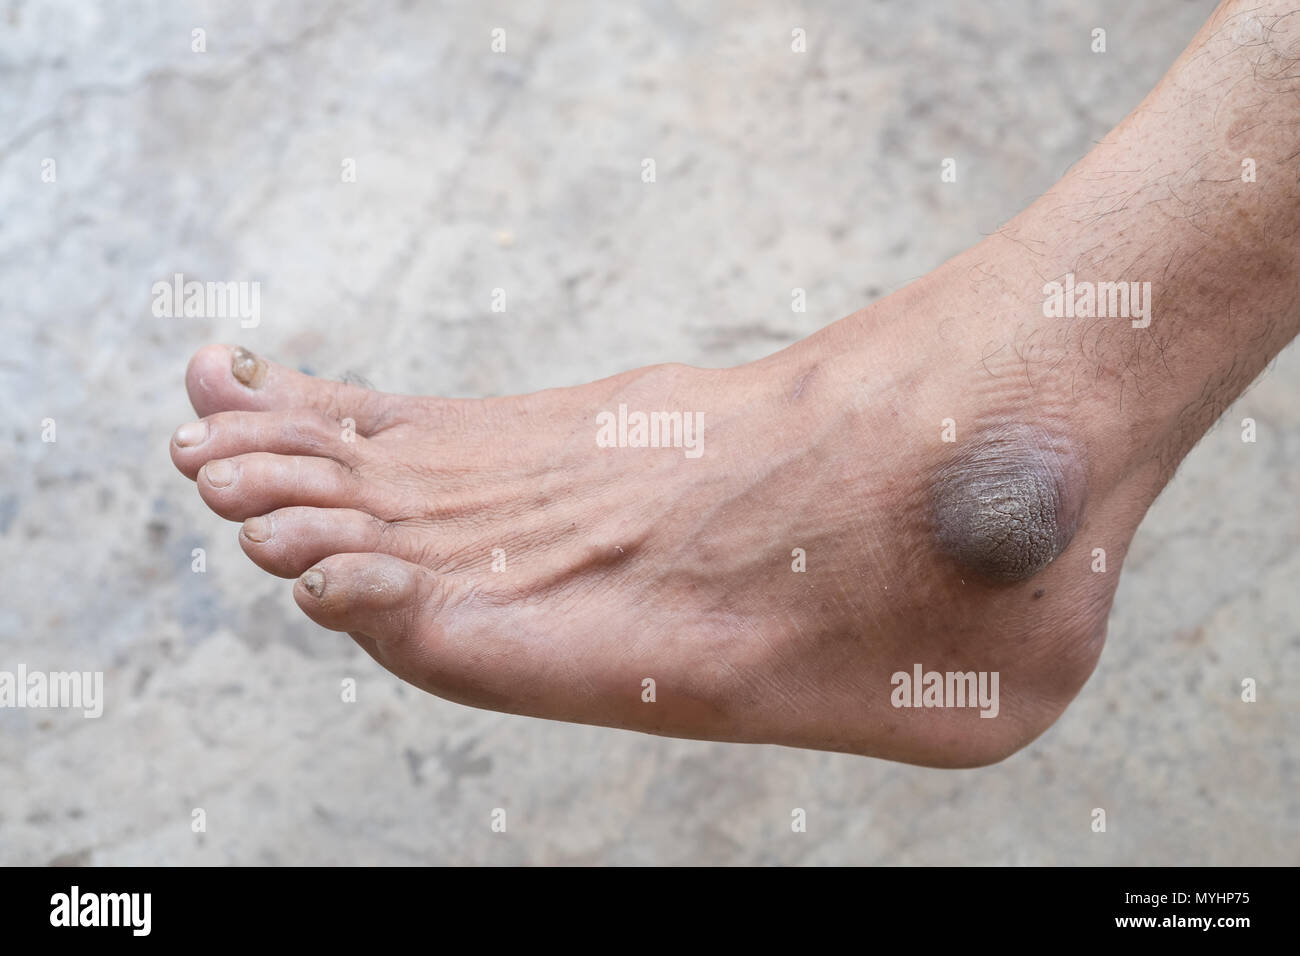 Gros plan du pied avec une infection des pieds causées par les champignons. Banque D'Images